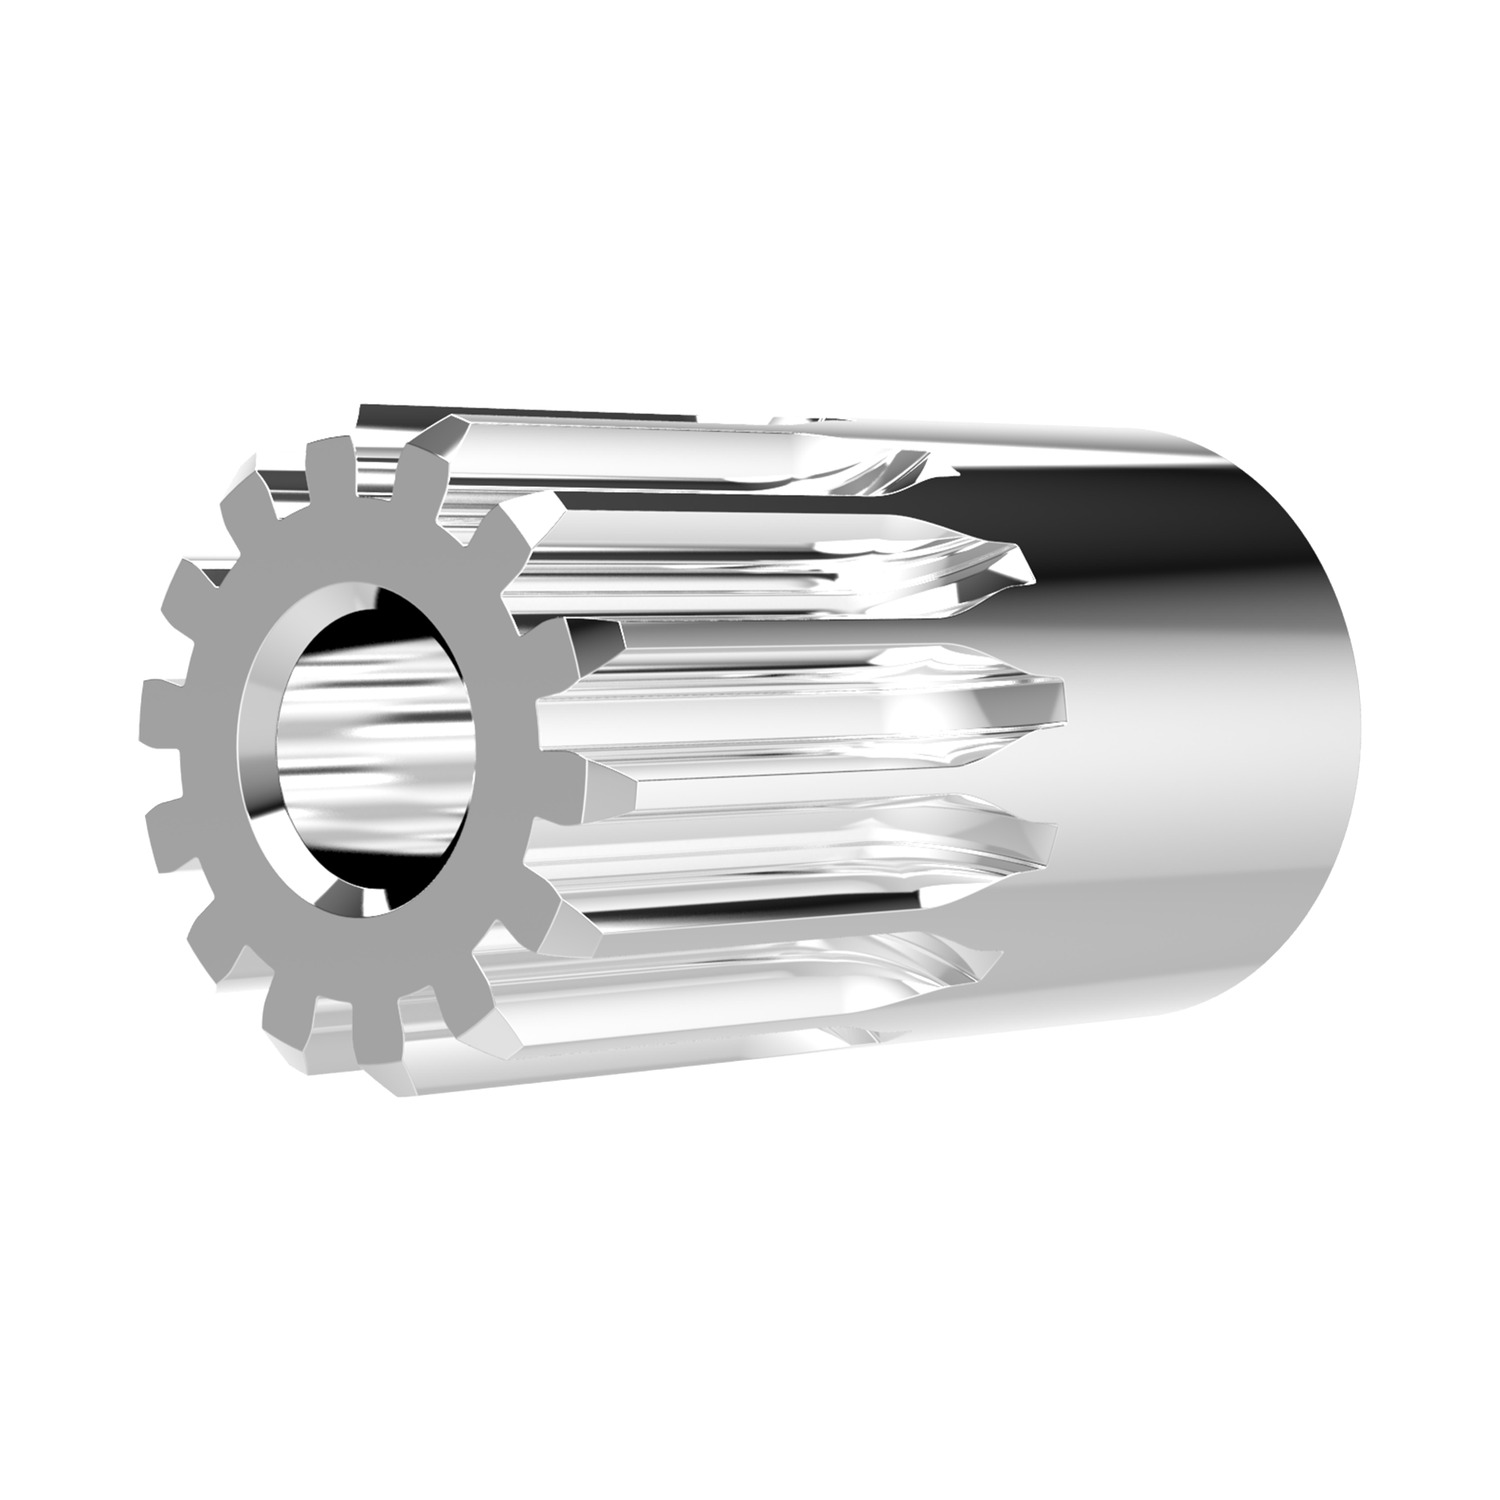 Product R5183, Spur Gears - Module 1.25 carbon steel - 12-17 teeth / 